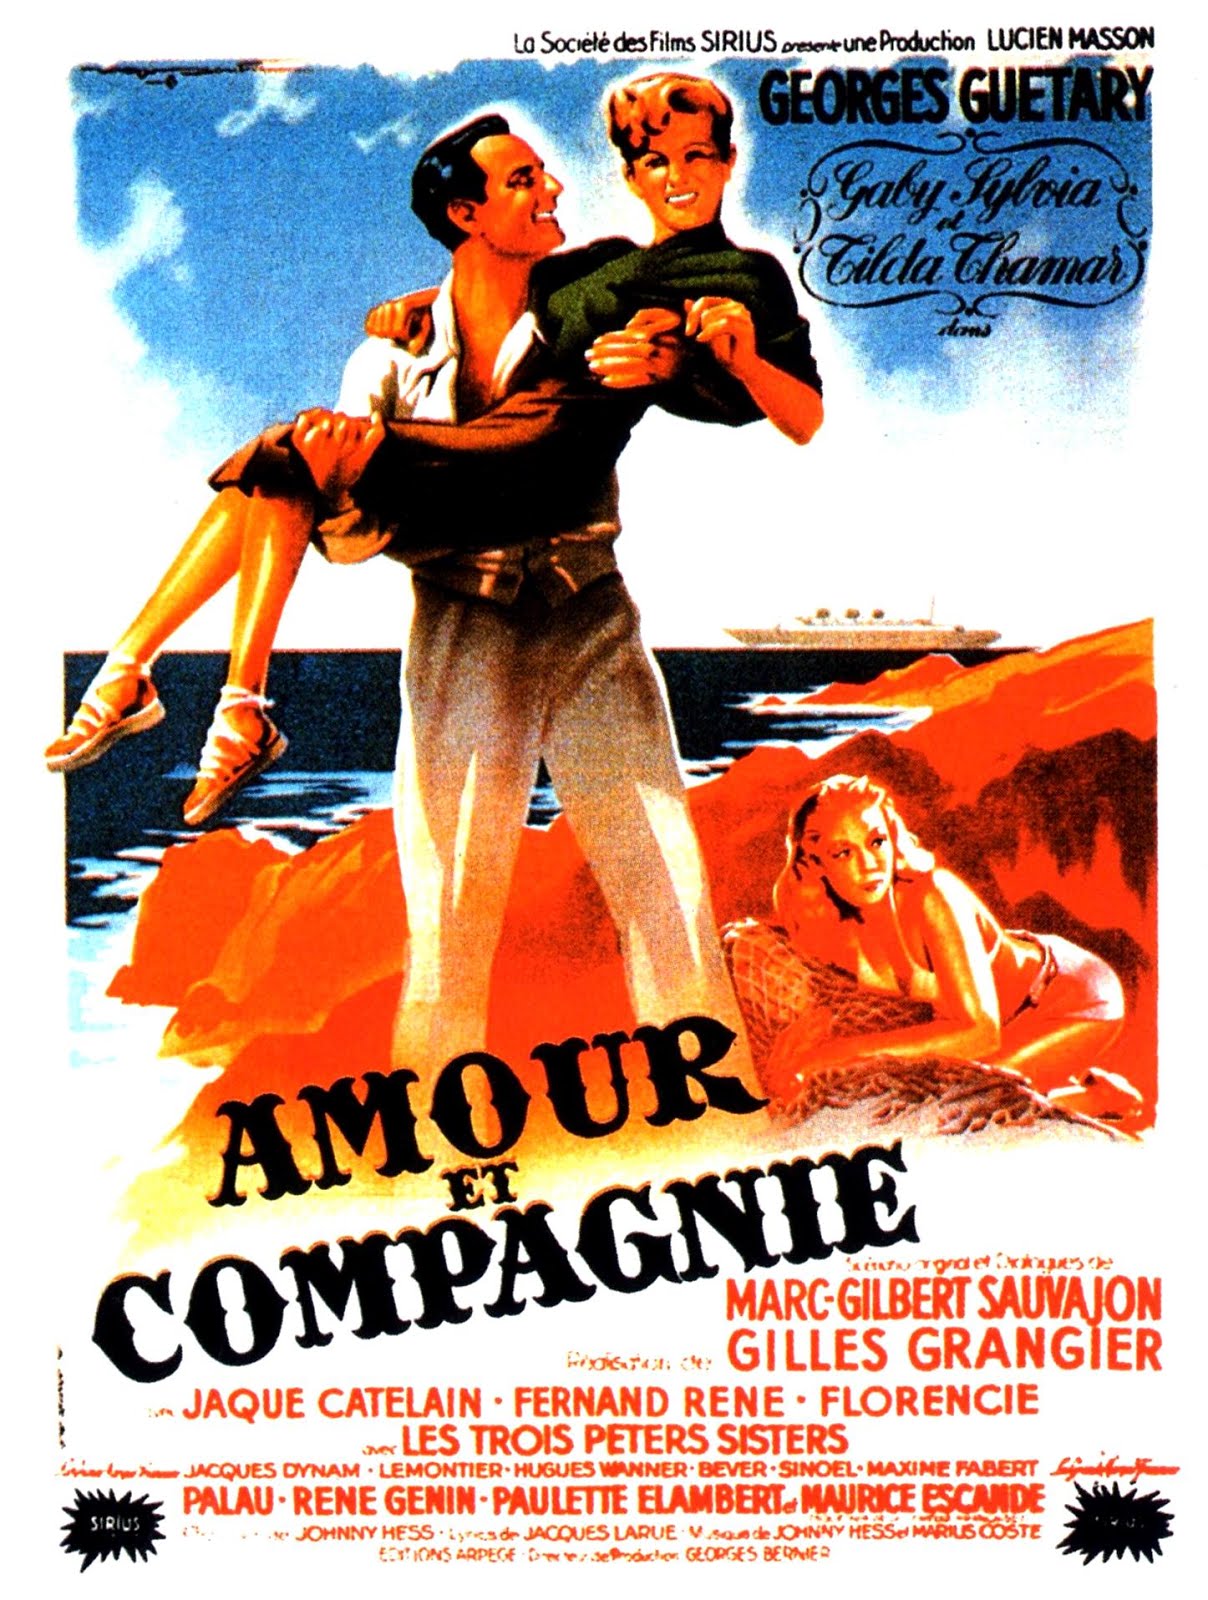 Amour et compagnie (1949) Gilles Grangier - Amour et compagnie (09.06.1949 / 1949)